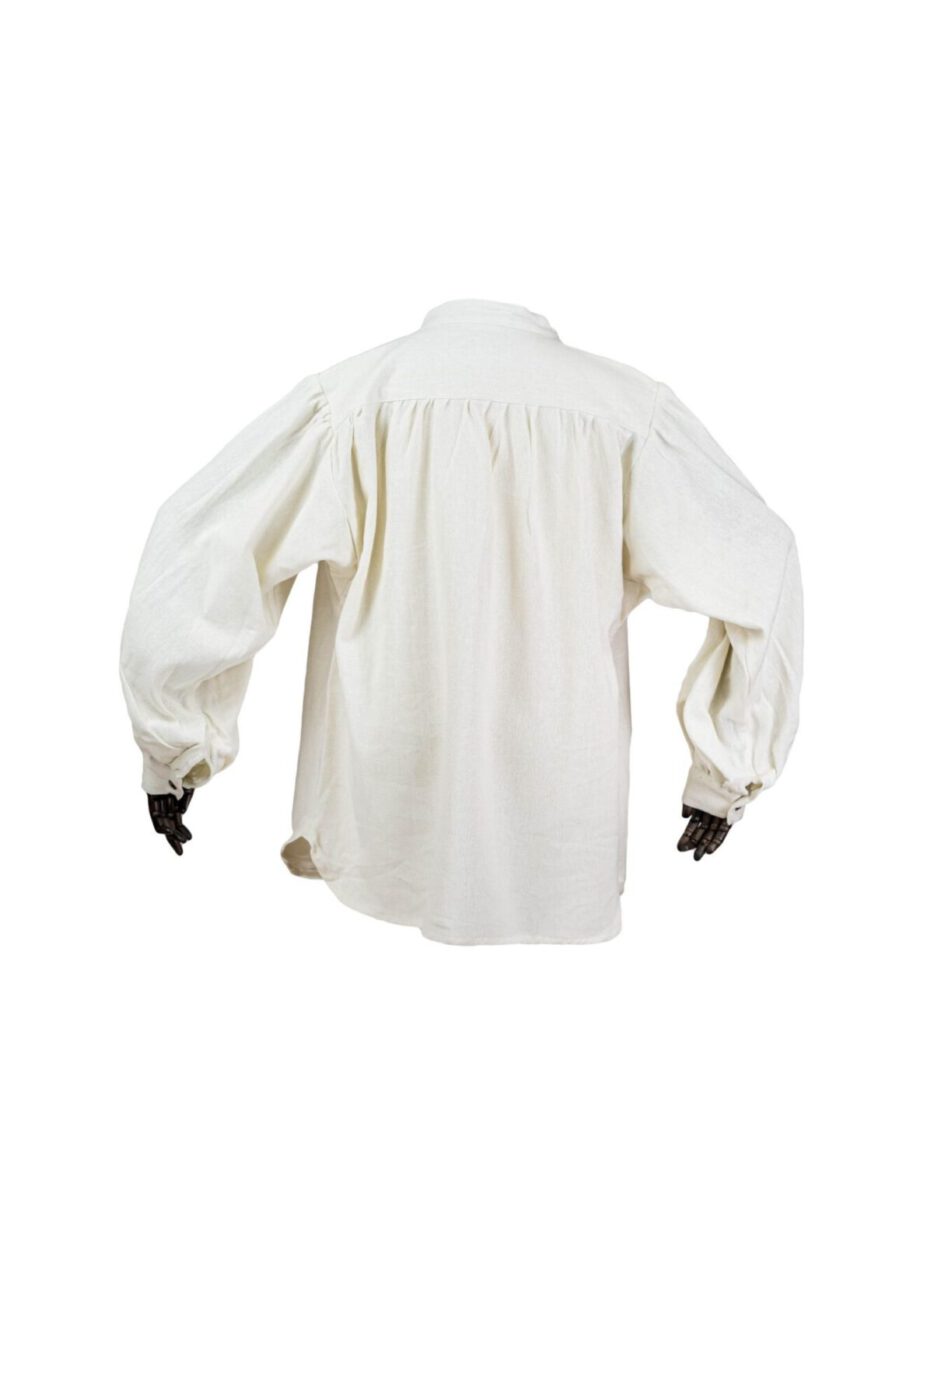 Robustes Stehkragenhemd aus schwerer gewebter Baumwolle Modell Manni